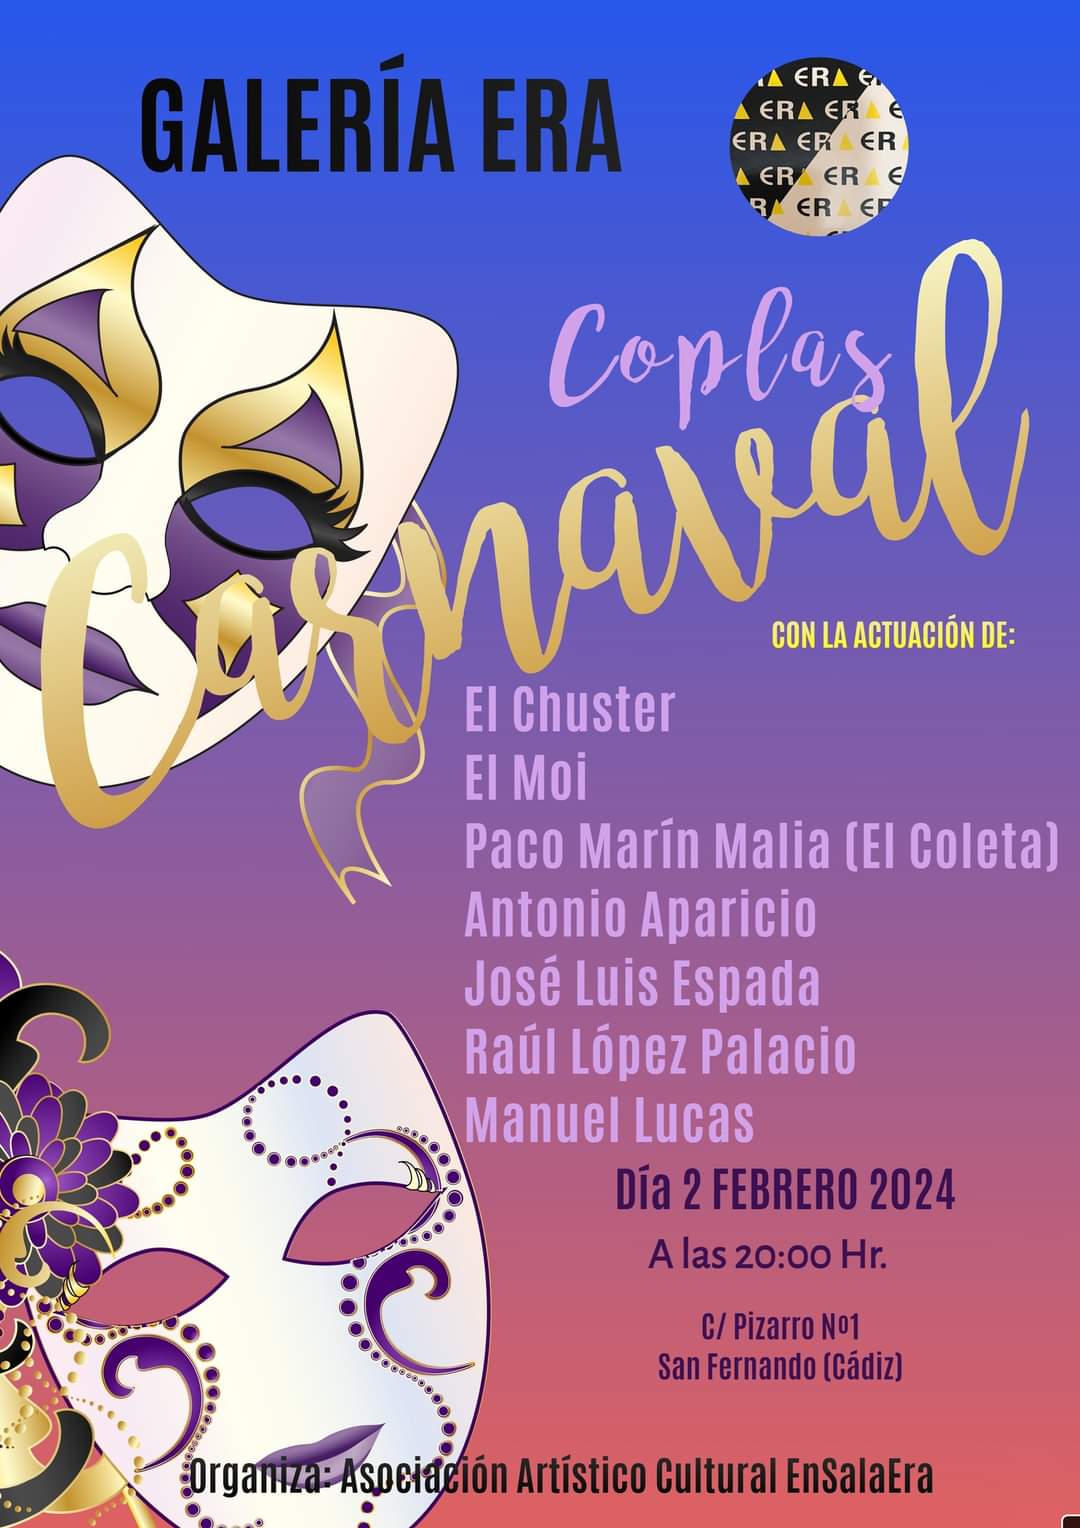 Coplas de Carnaval en Galería ERA San Fernando